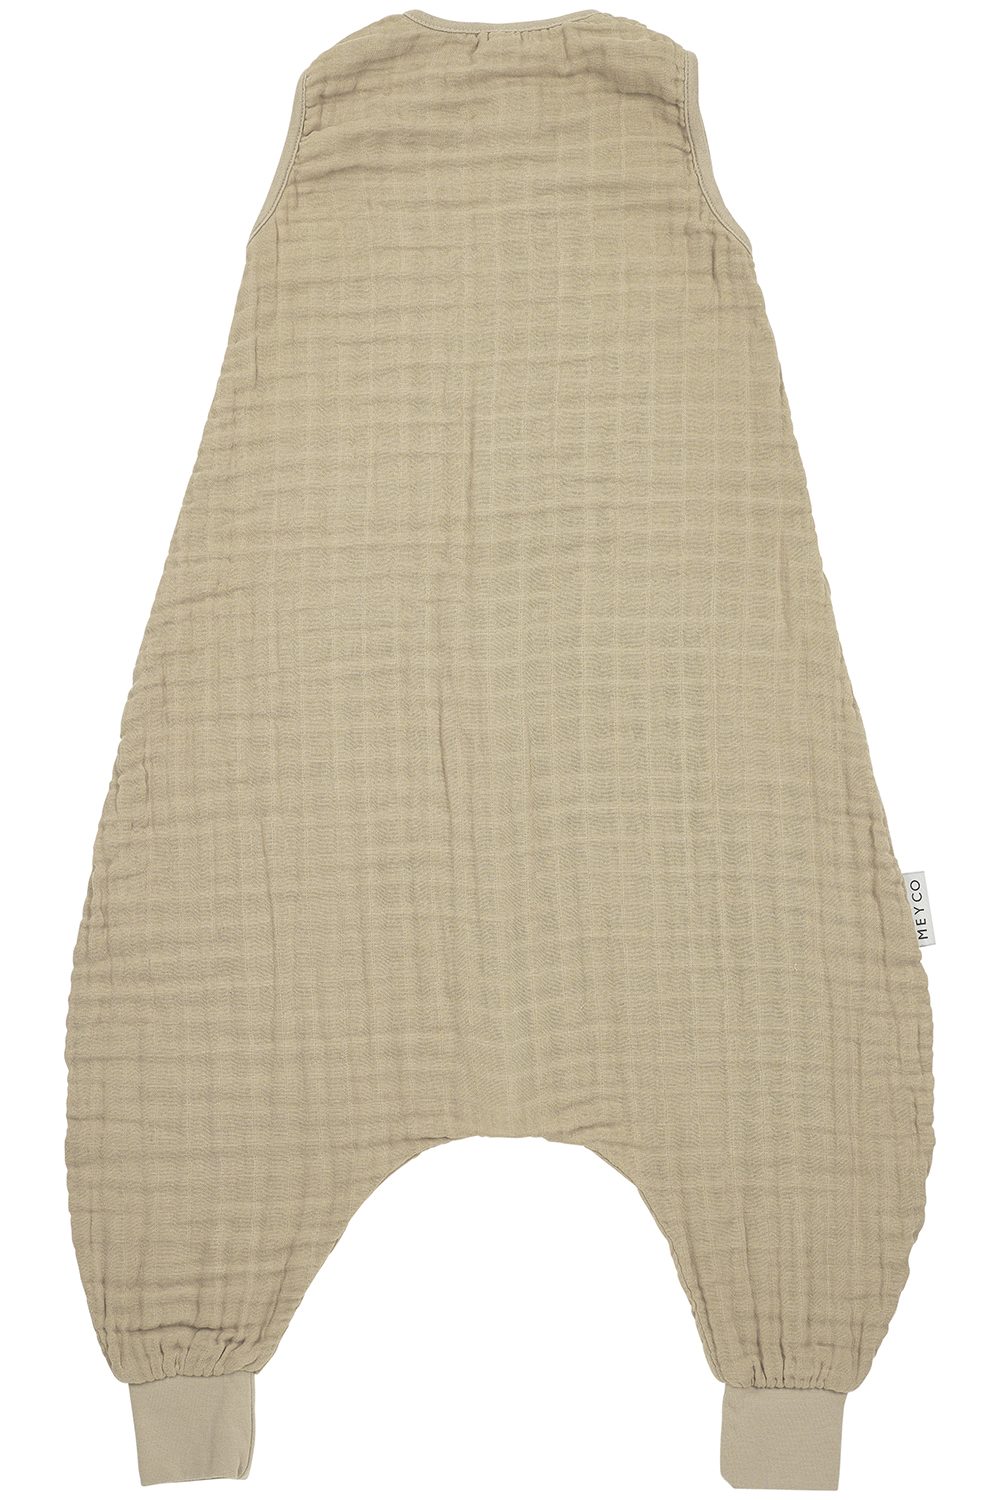 Baby zomer slaapoverall jumper pre-washed hydrofiel Uni - sand - 80cm